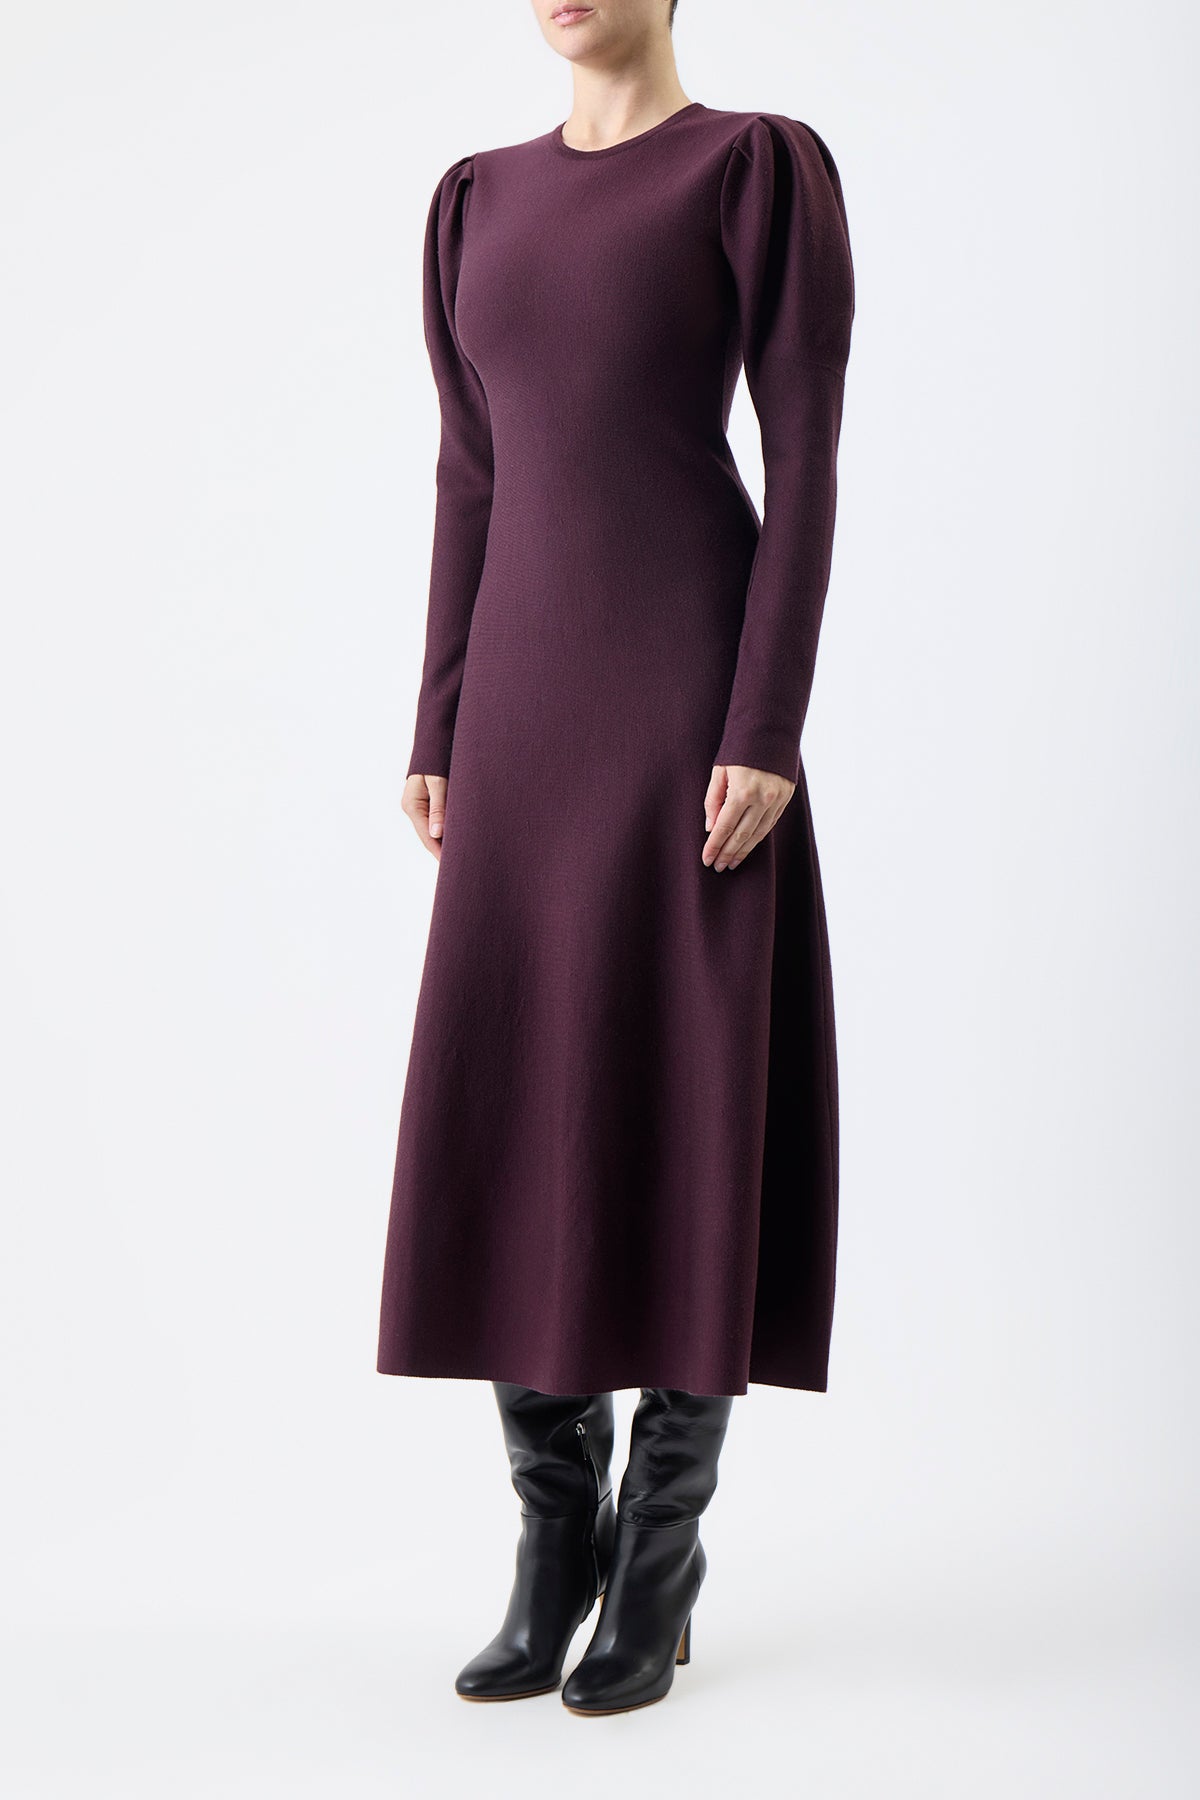 Hannah Knit Dress in Deep Bordeaux Cashmere Merino Wool